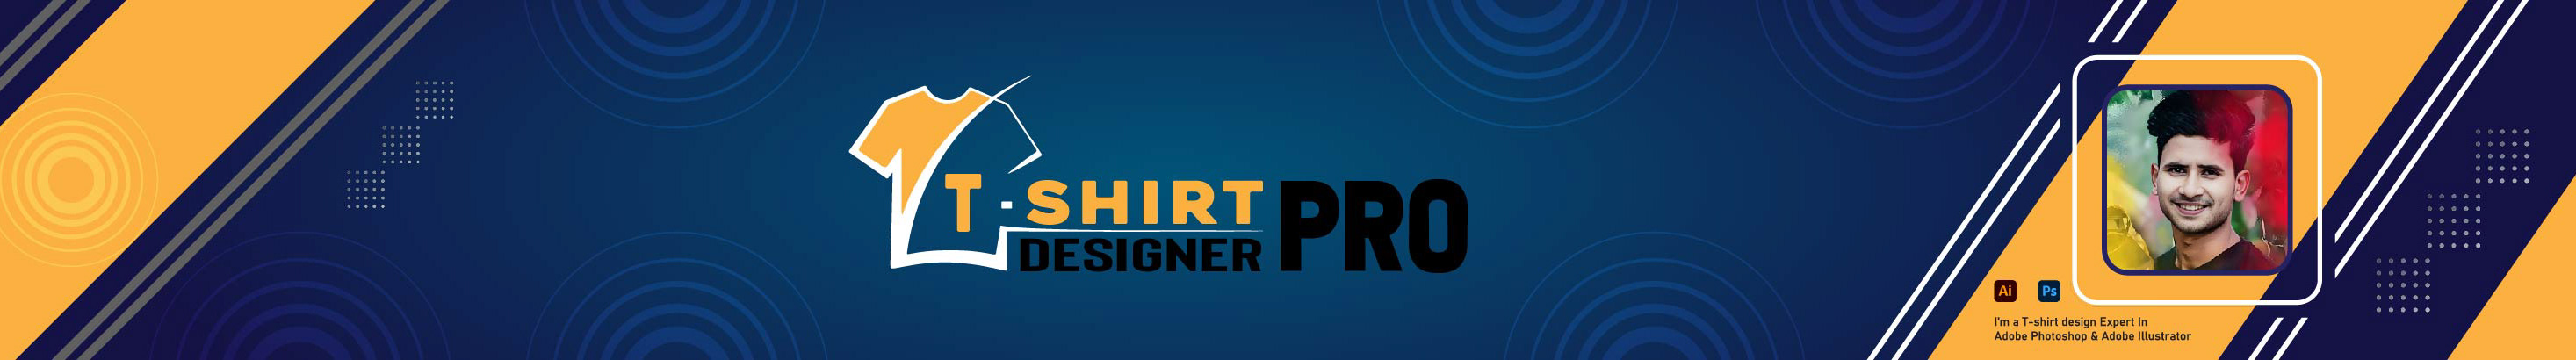 Banner de perfil de T-Shirt Designer Pro